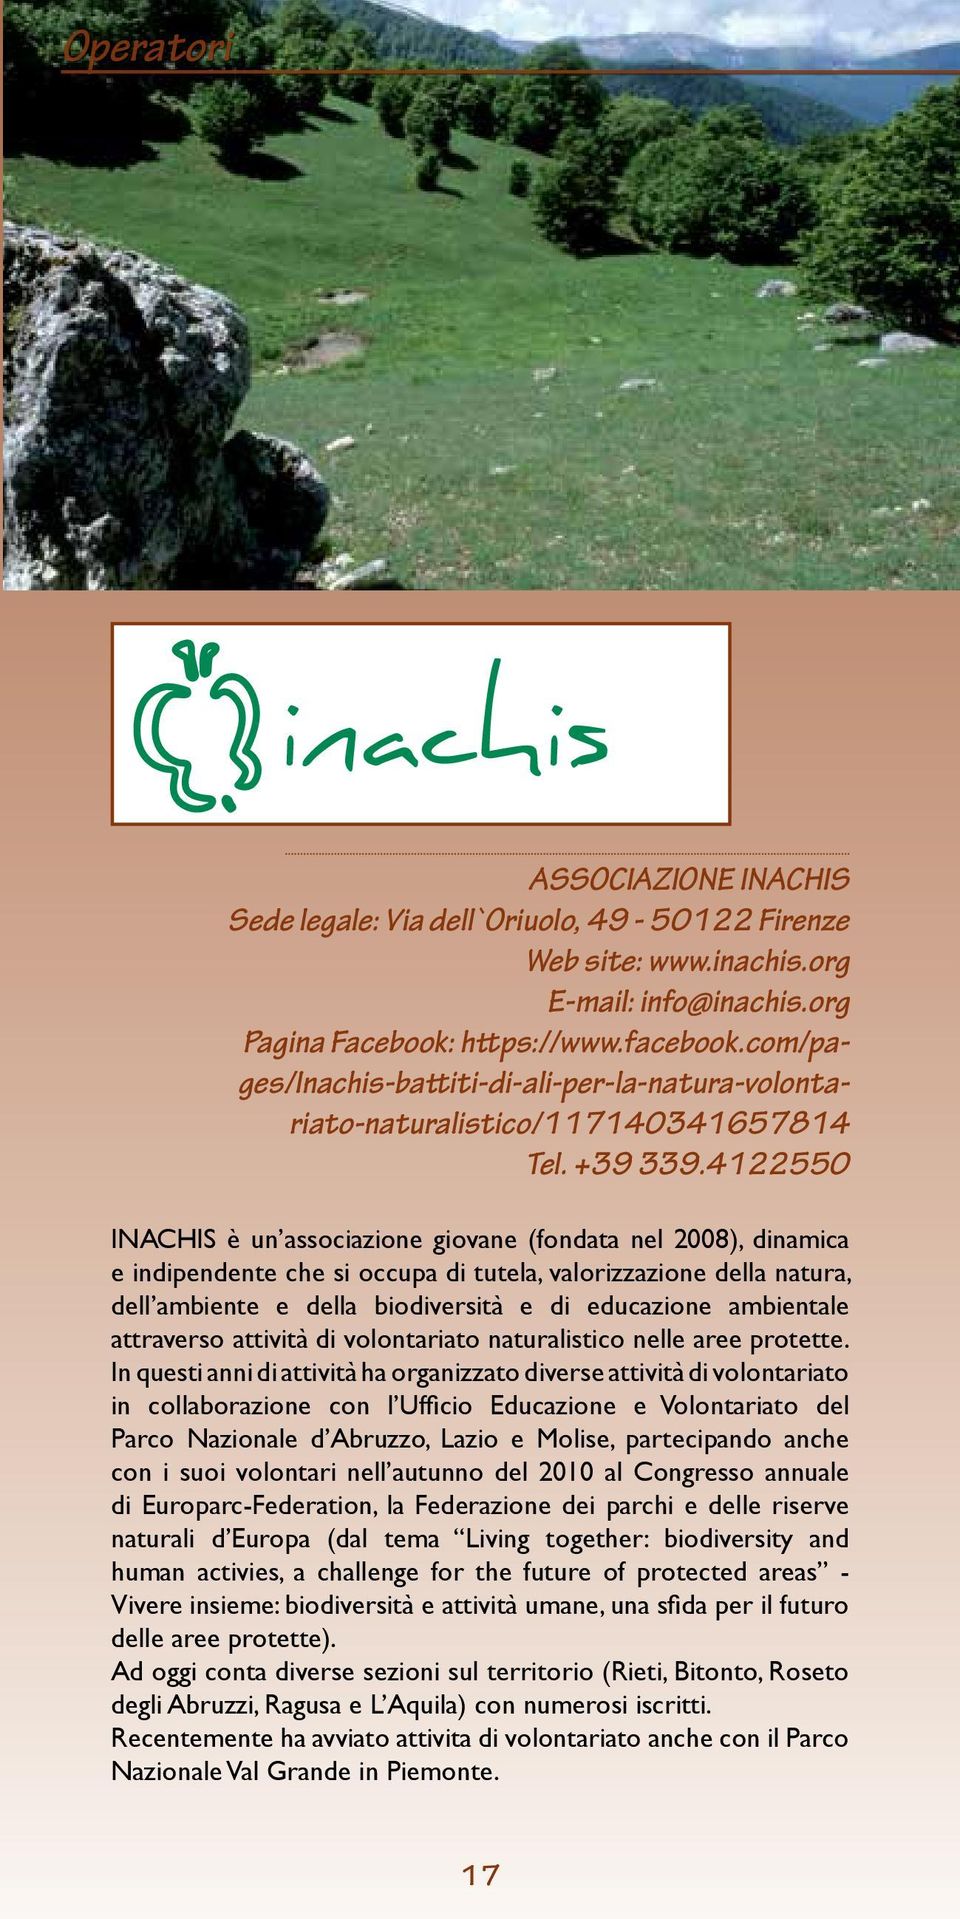 4122550 INACHIS è un associazione giovane (fondata nel 2008), dinamica e indipendente che si occupa di tutela, valorizzazione della natura, dell ambiente e della biodiversità e di educazione